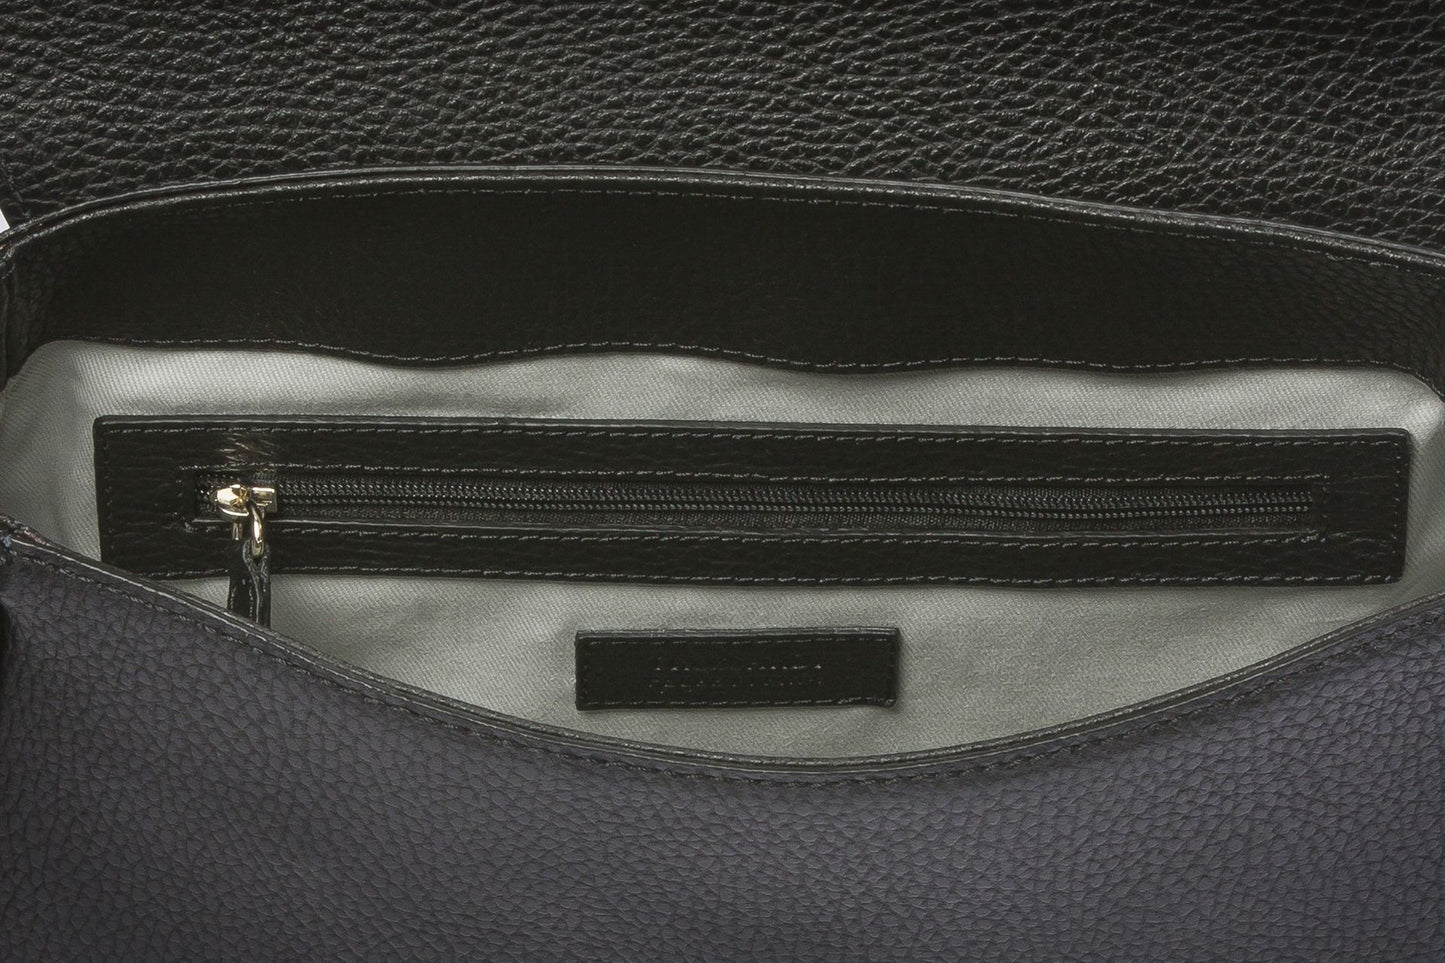 Embossed Leather Elegance Handbag